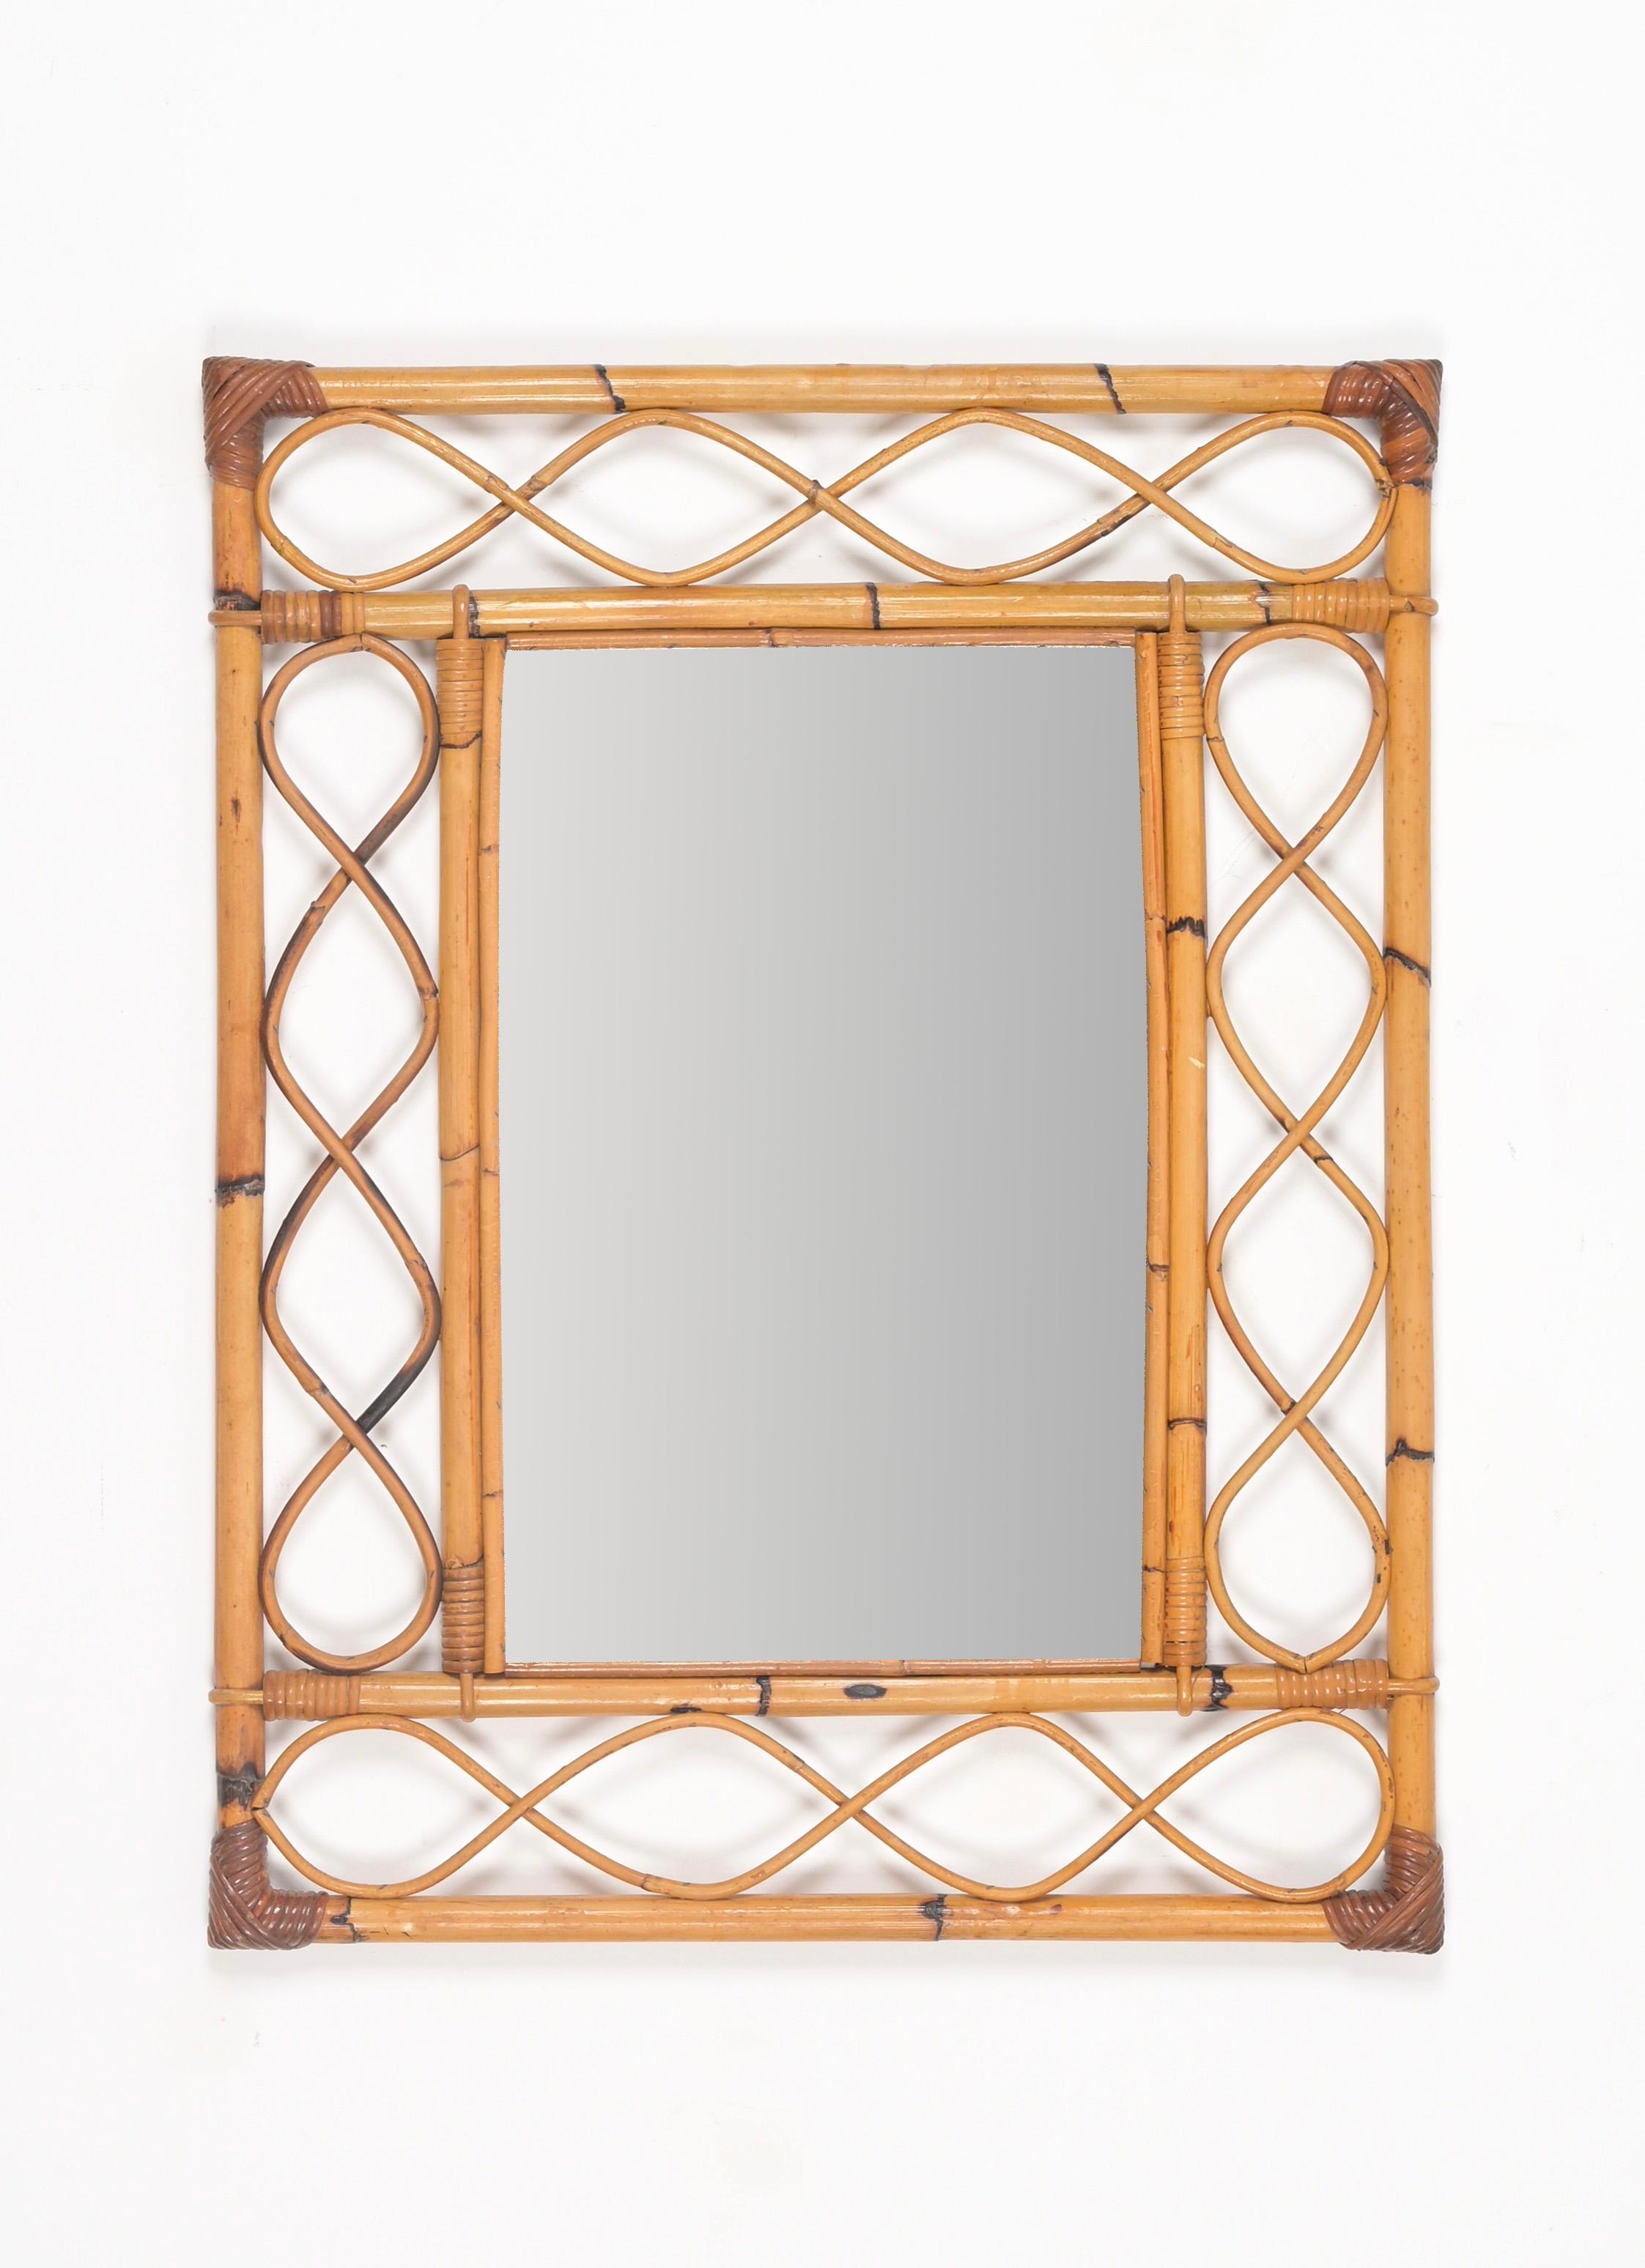 Magnifique miroir mural rectangulaire de style Côte d'Azur en bambou, rotin courbé et osier tressé à la main. Ce grand miroir spectaculaire a été produit en Italie dans les années 1960.

Ce ravissant miroir présente un double cadre rectangulaire en